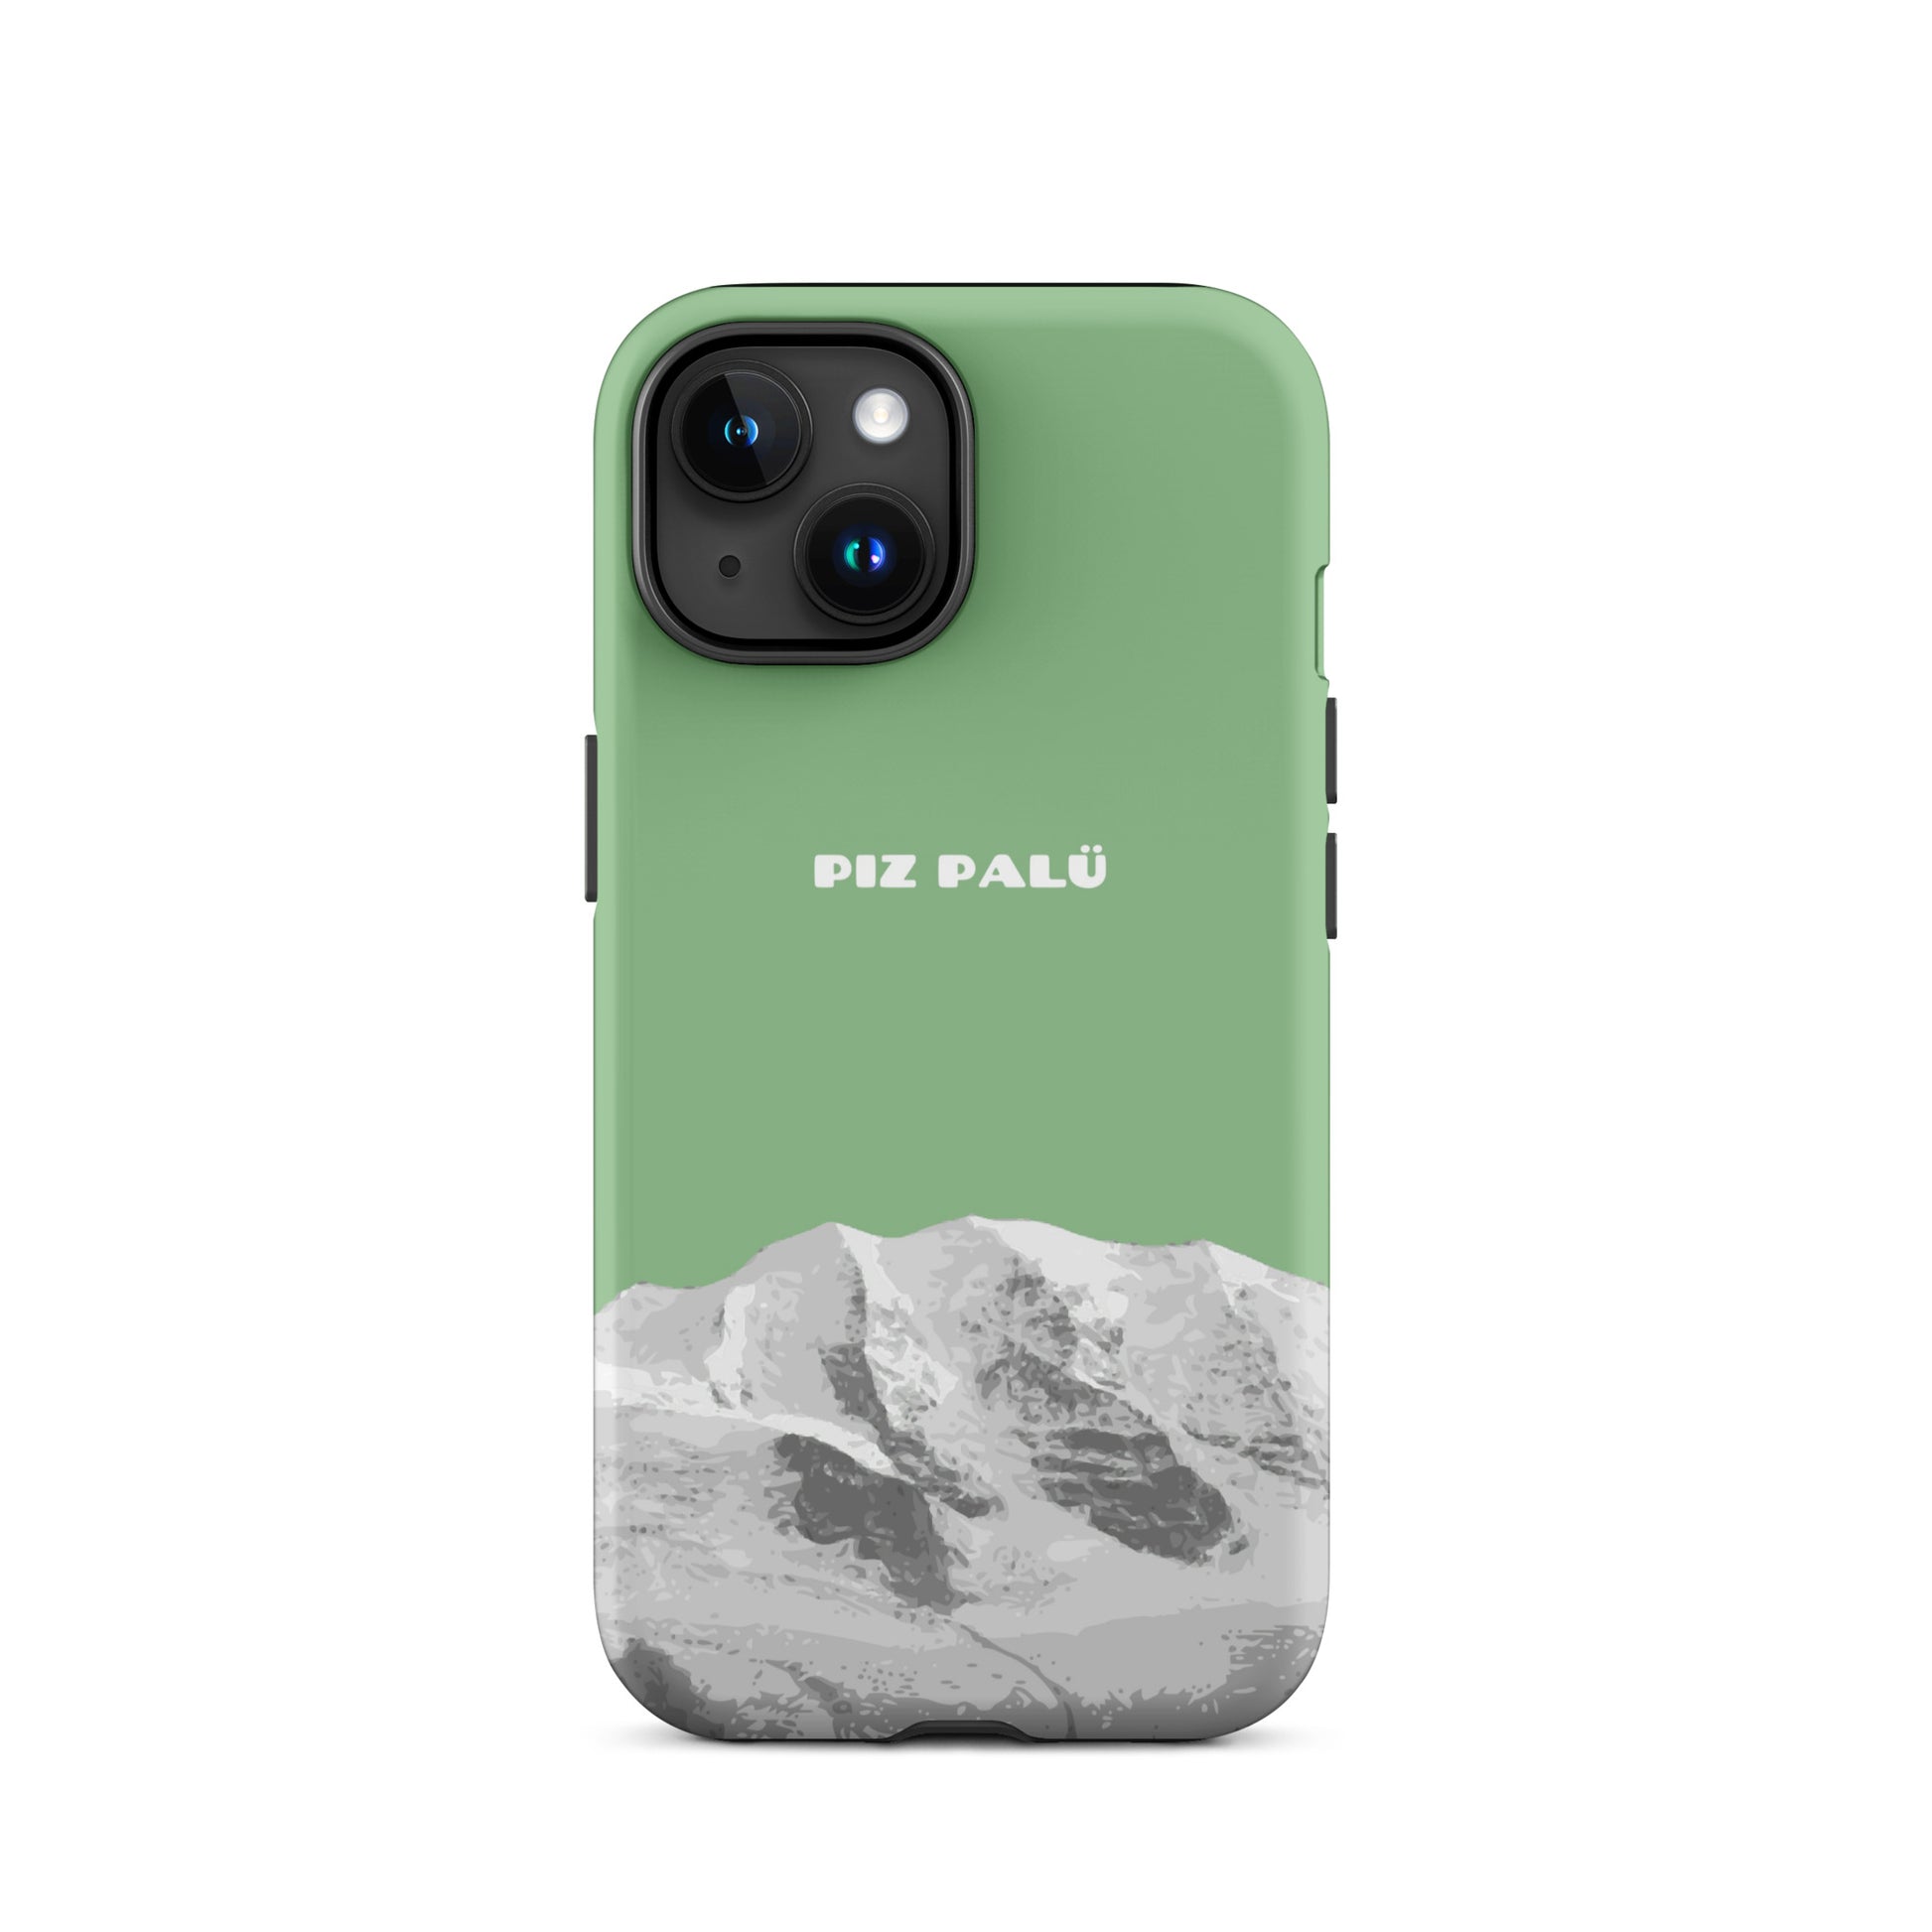 Hülle für das iPhone 15 von Apple in der Farbe Hellgrün, dass den Piz Palü in Graubünden zeigt.